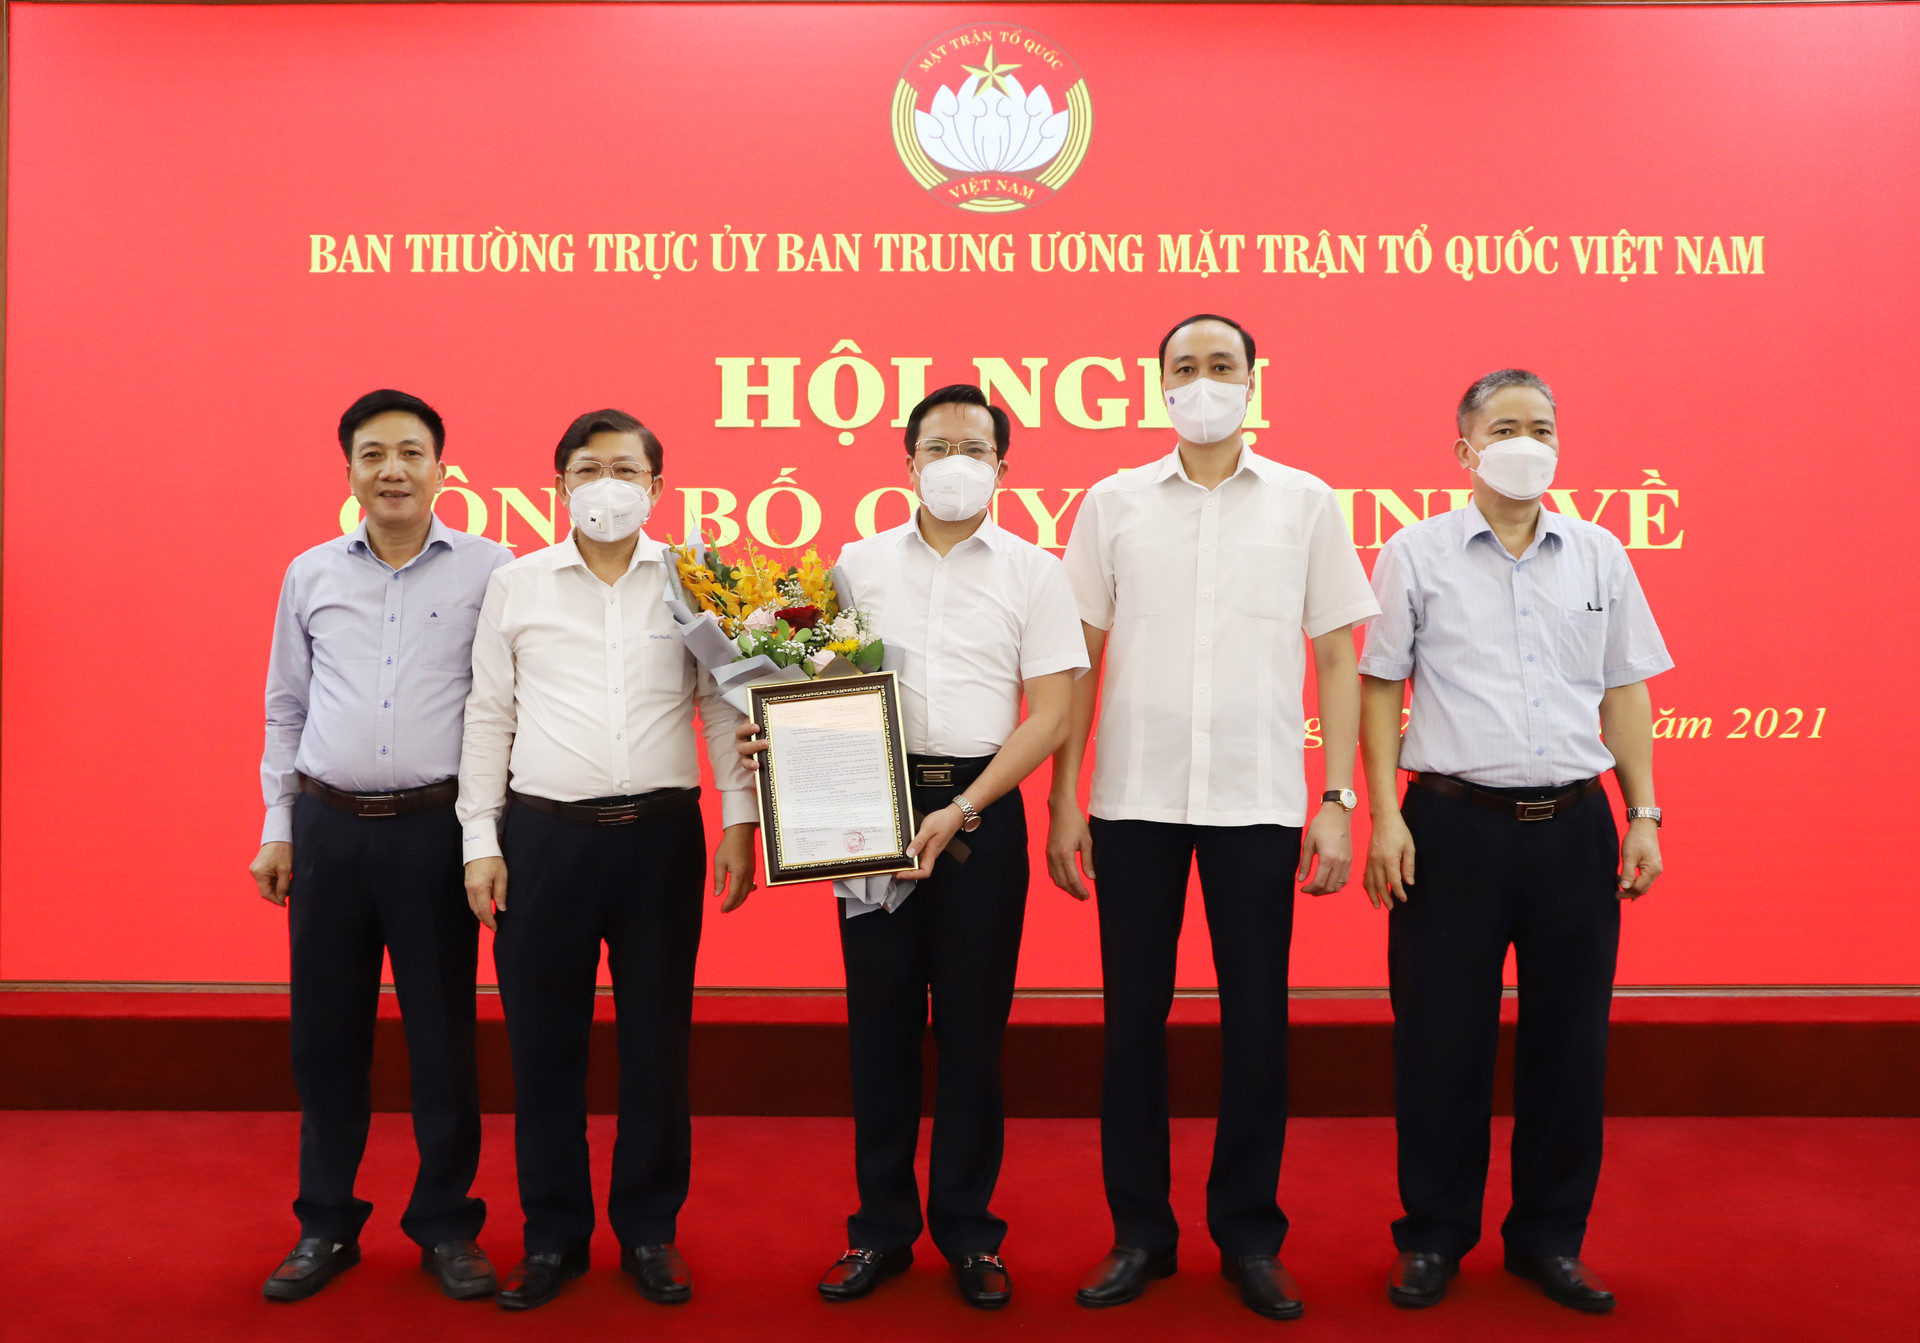 Phó Chủ tịch Nguyễn Hữu Dũng và  Phó Chủ tịch Phùng Khánh Tài Trao quyết định công tác cho đồng chí Nguyễn Đình Vượng. 